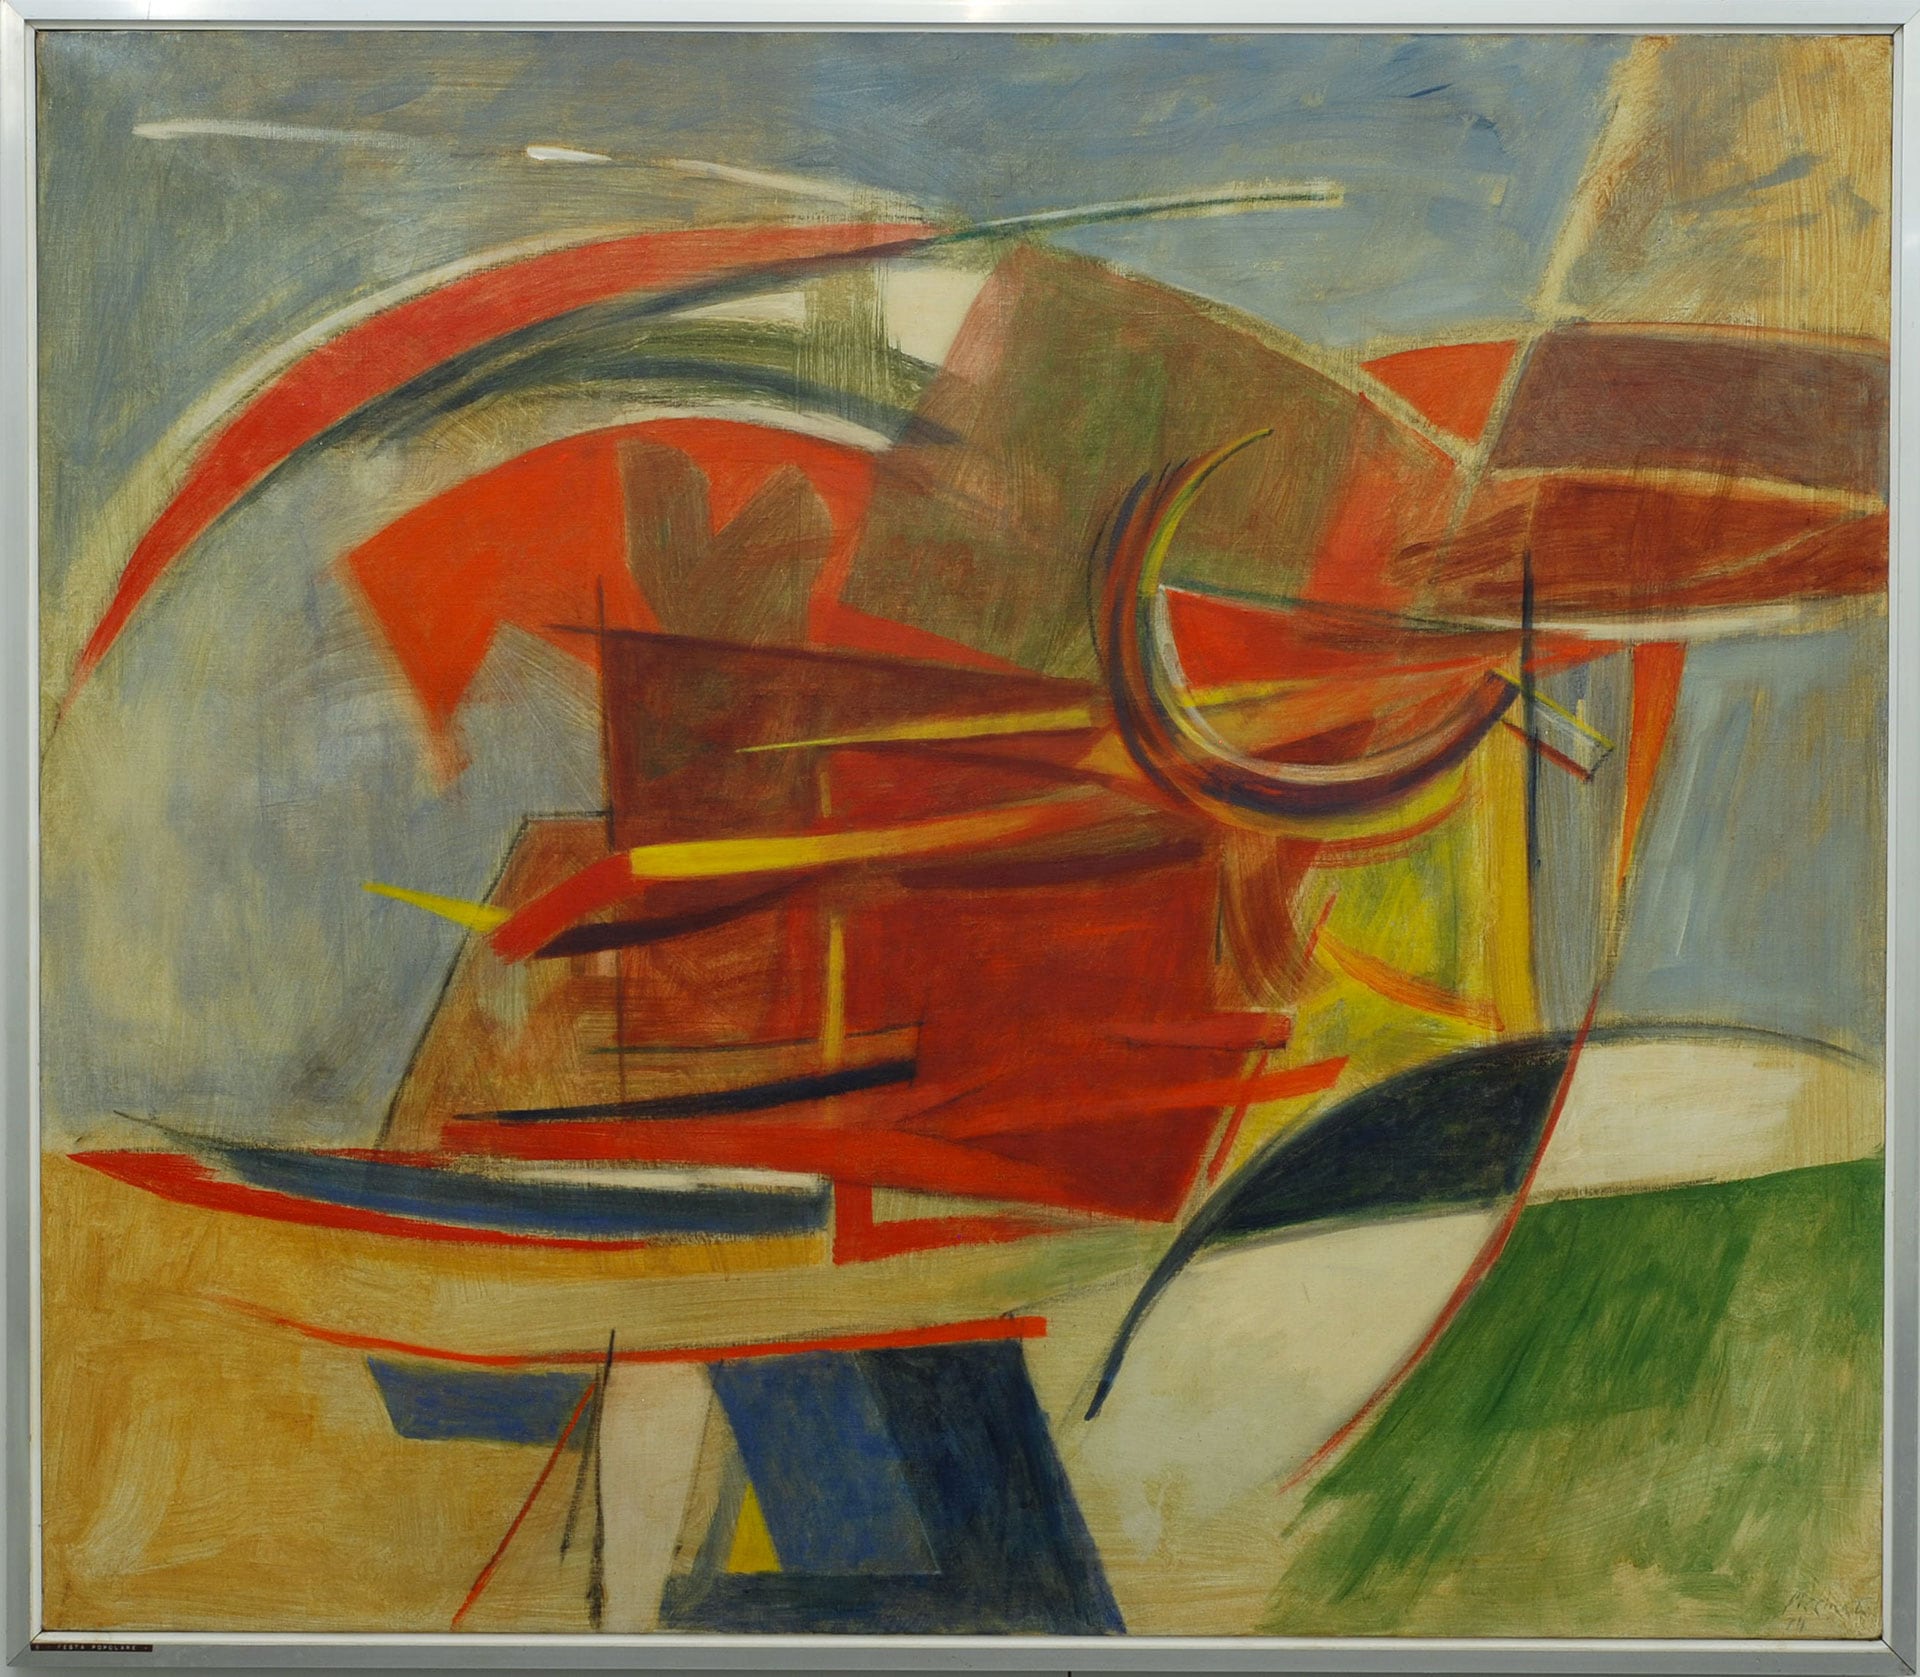 Armando Pizzinato (Maniagio, 1910 – Venezia, 2004), Festa popolare, 1974. Olio e tempera su tela, cm. 128x148